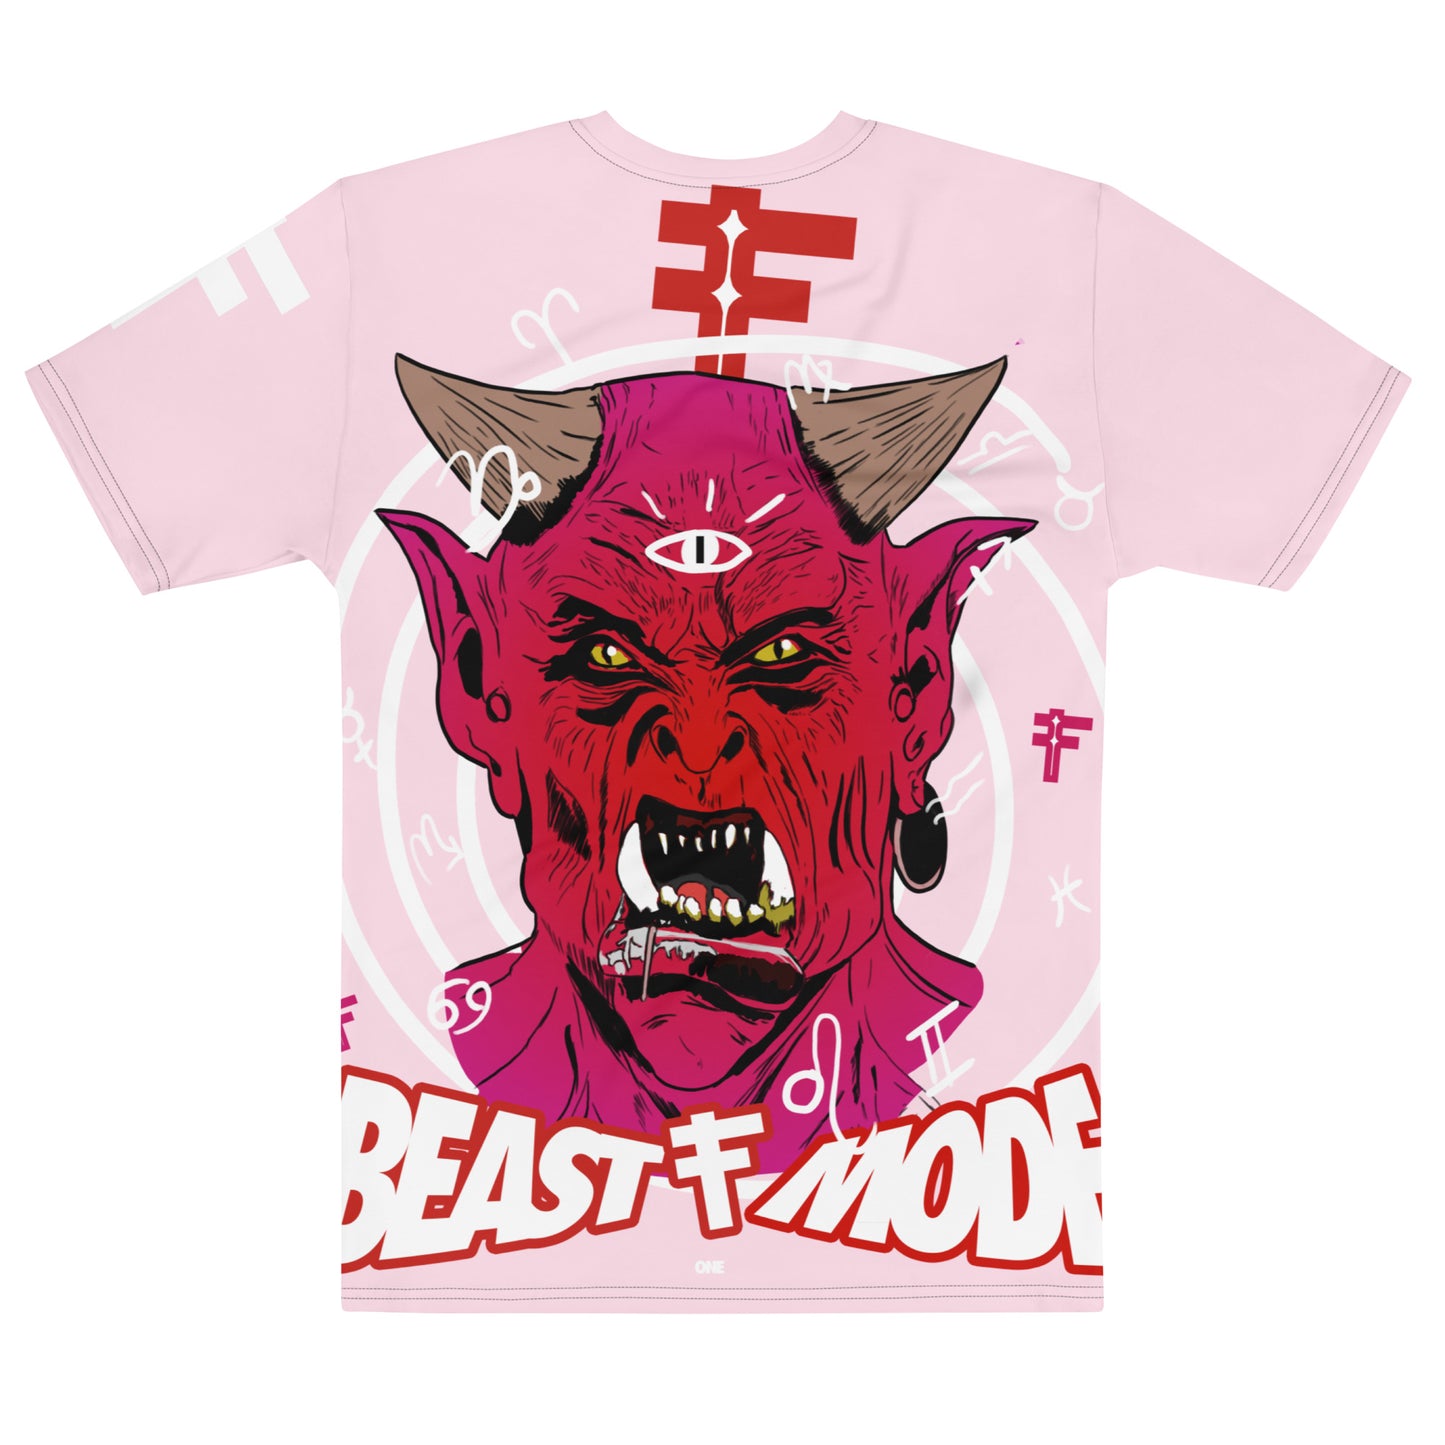 Beast Mode One (Vintage Design) Pink